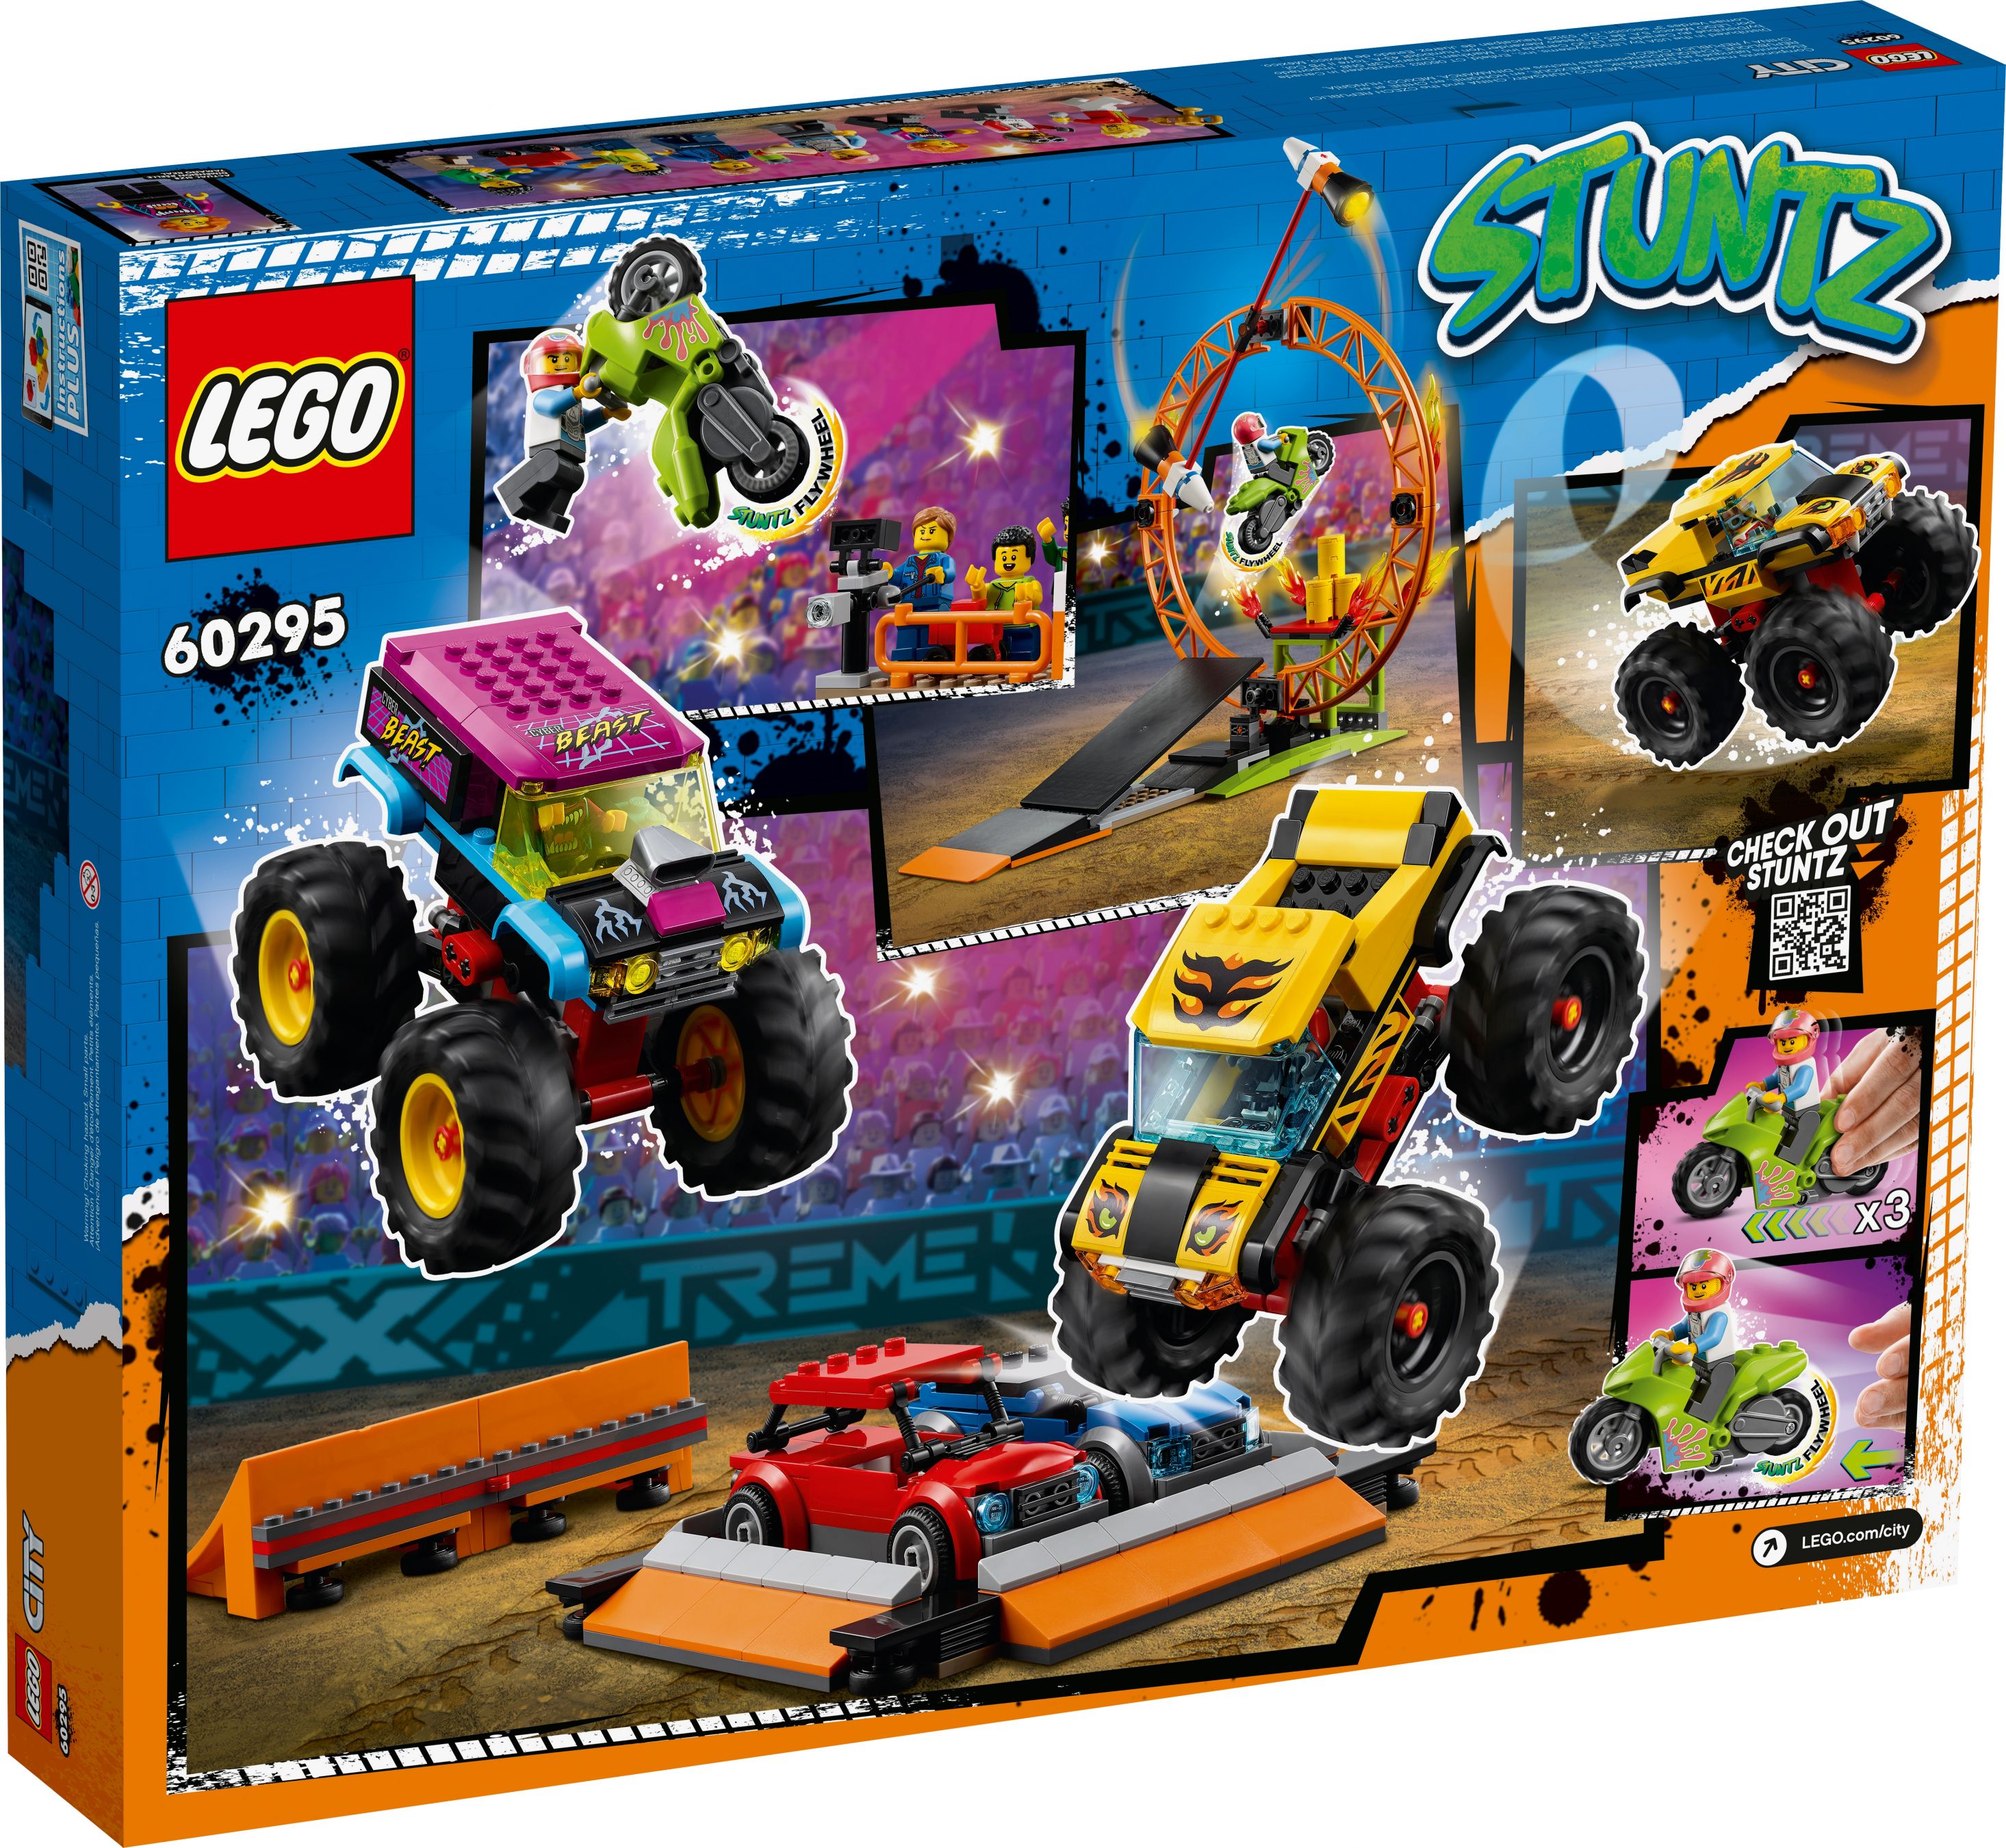 LEGO City 60295 Stuntshow-Arena LEGO_60295_box5_v39.jpg